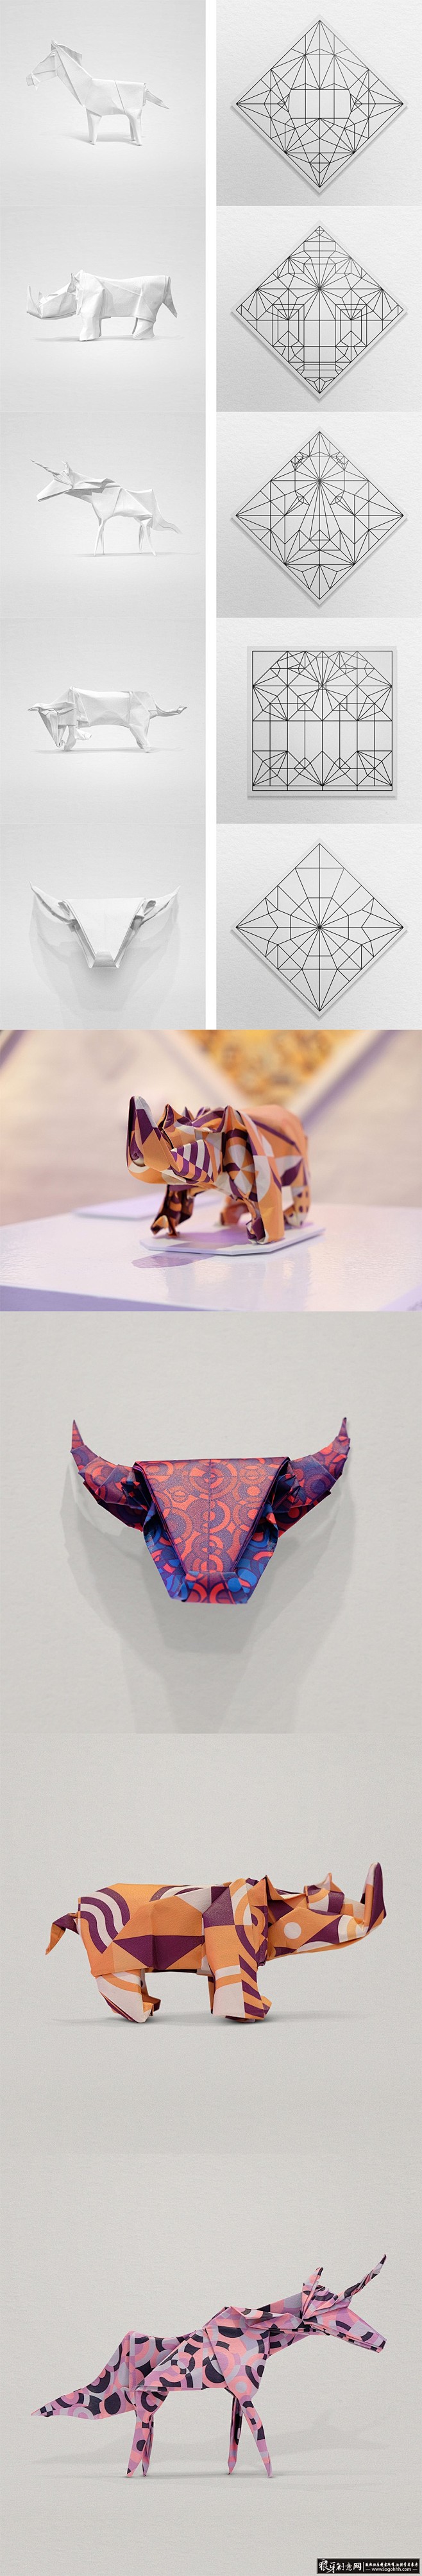 其他 创意折纸 动物折纸 抽象图形设计 ...